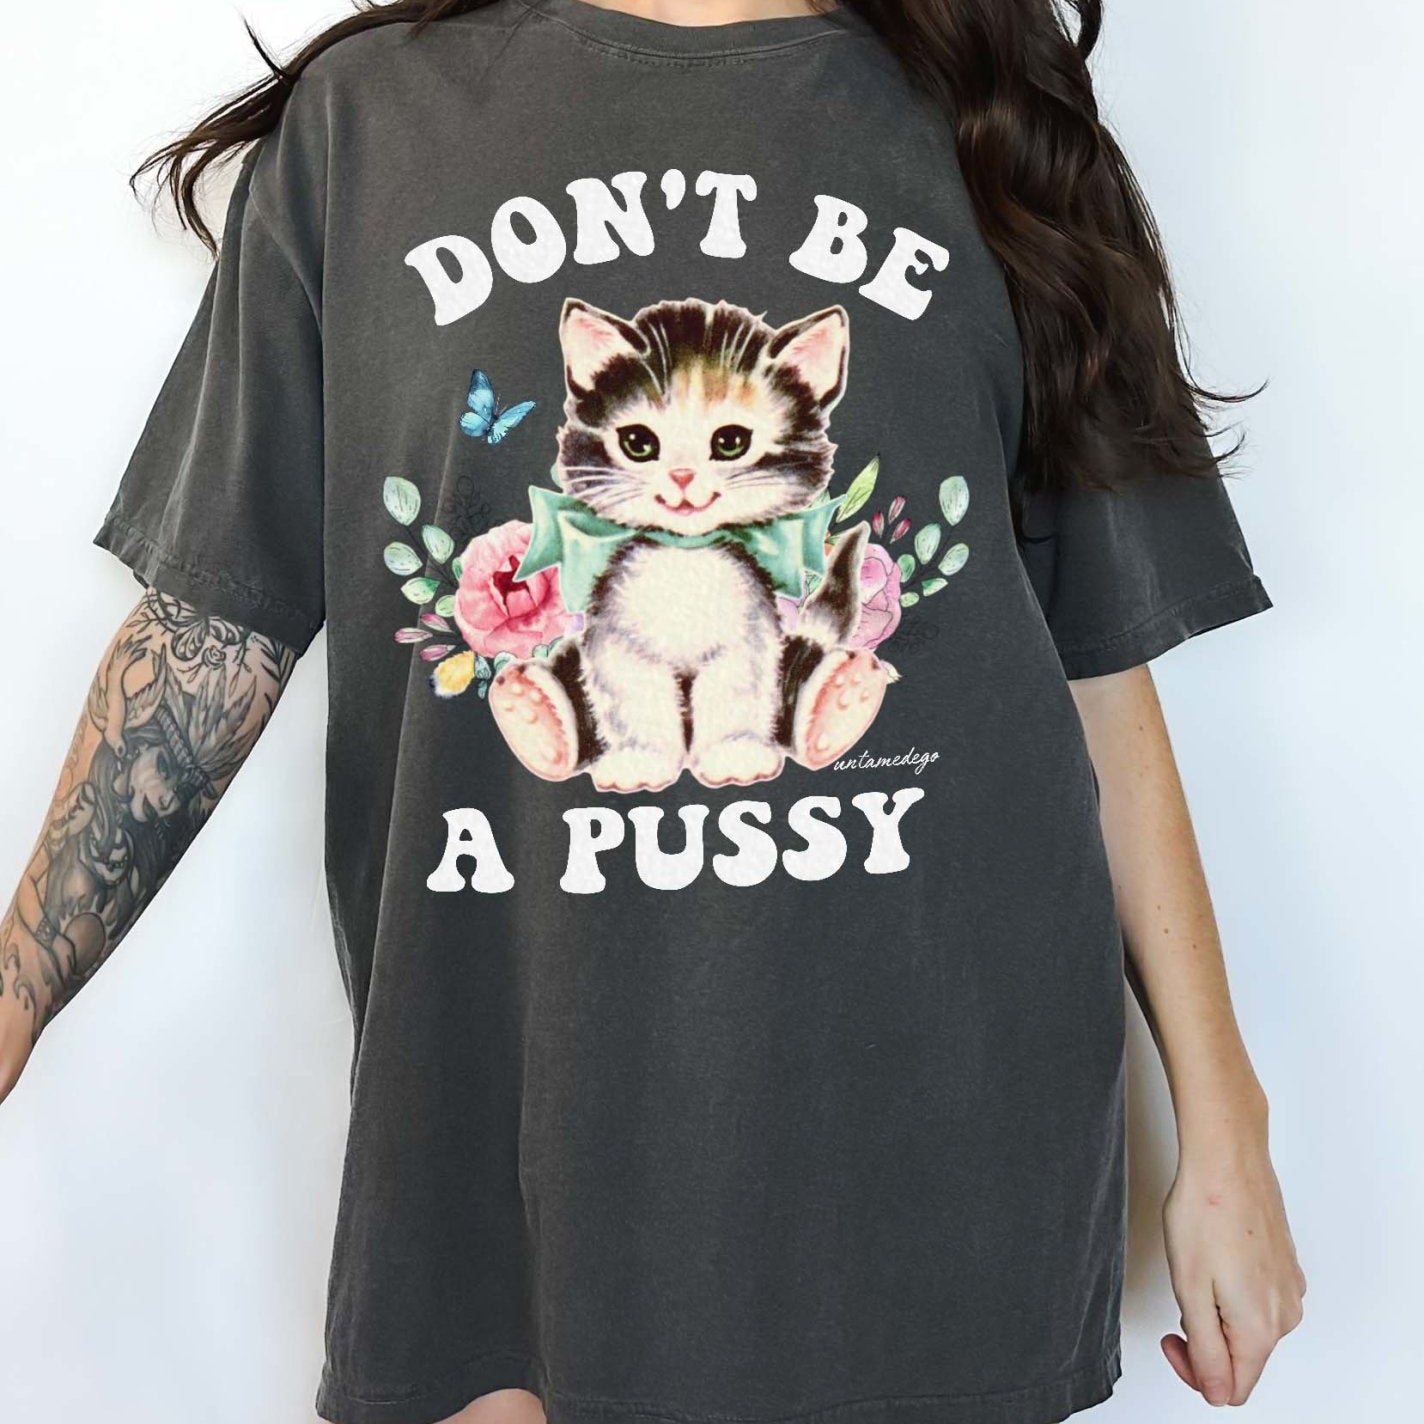 Don't Be A Pussy Tee - UntamedEgo LLC.